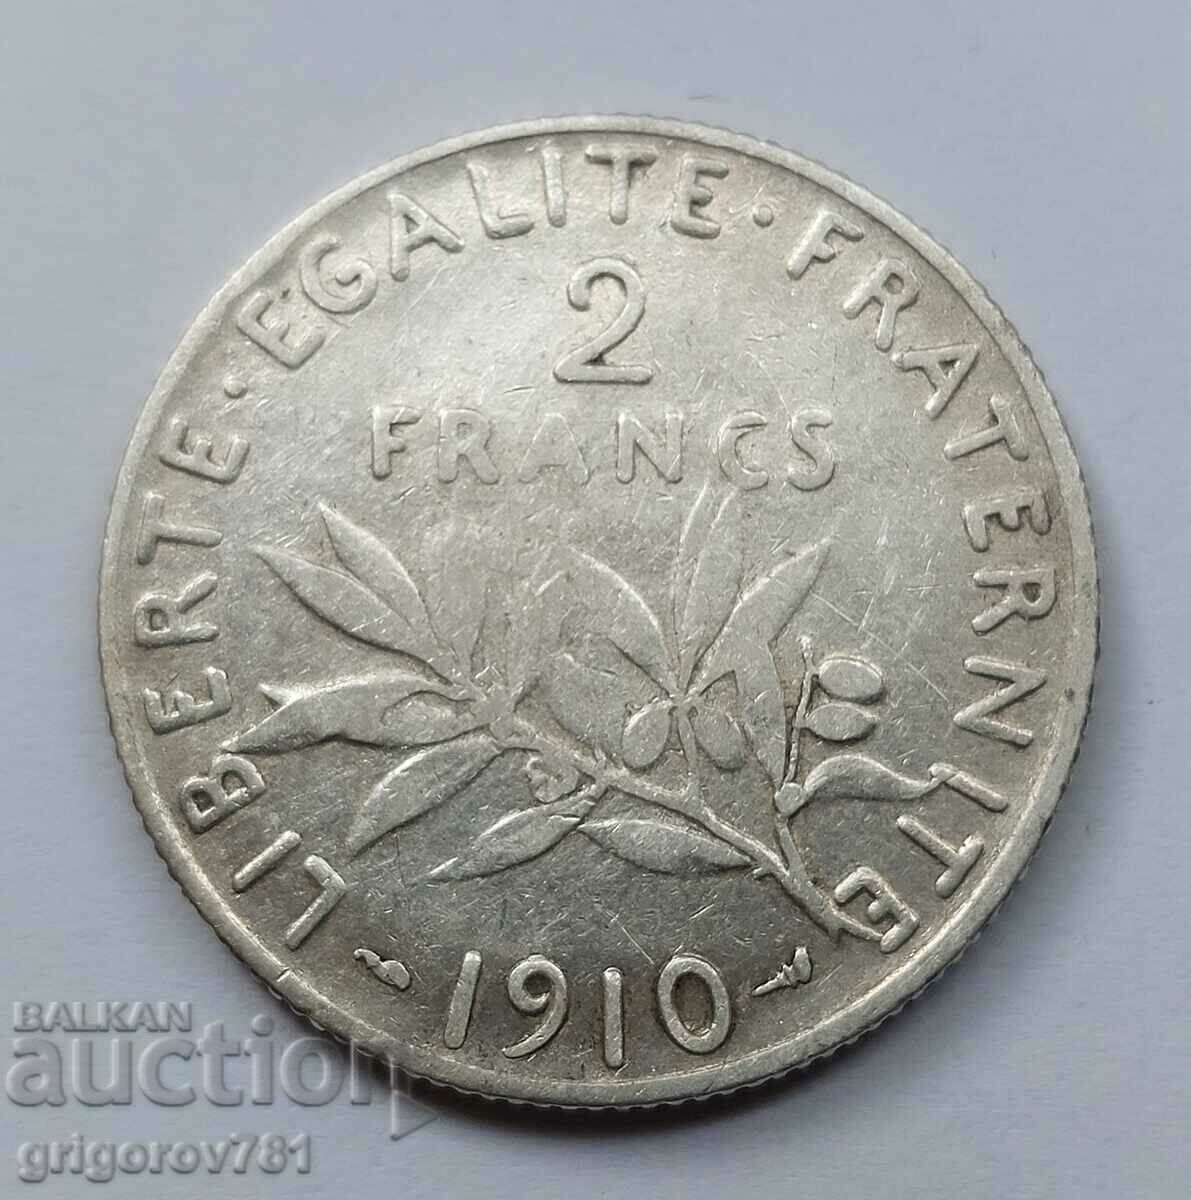 2 Franci Argint Franta 1910 - Moneda de argint #147